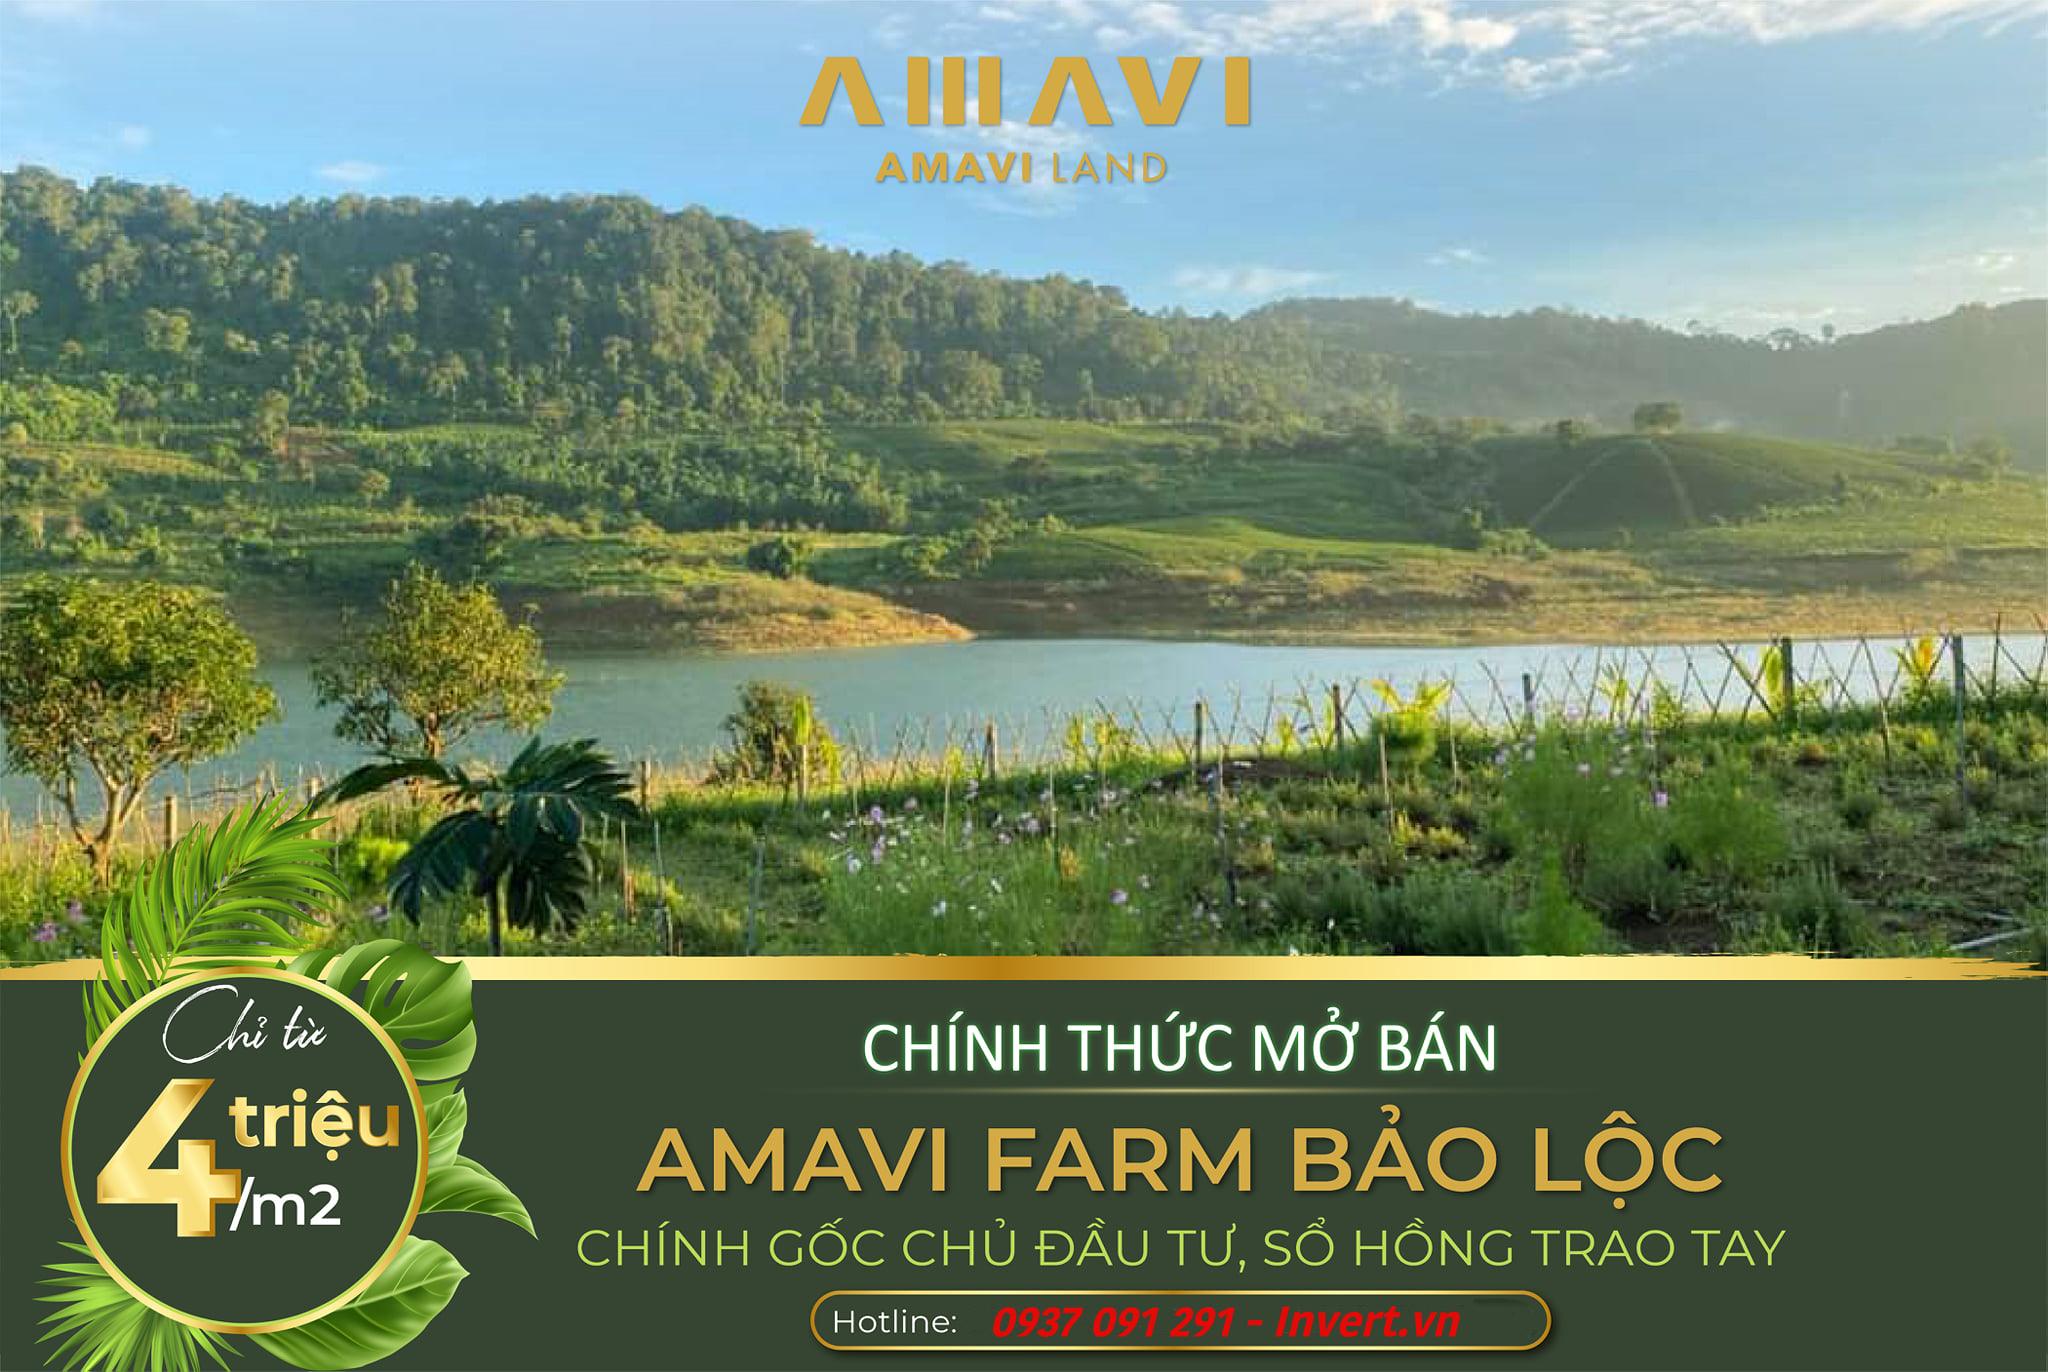 Giá bán Amavi Farm Bảo Lộc chỉ từ 4 triệu/m2